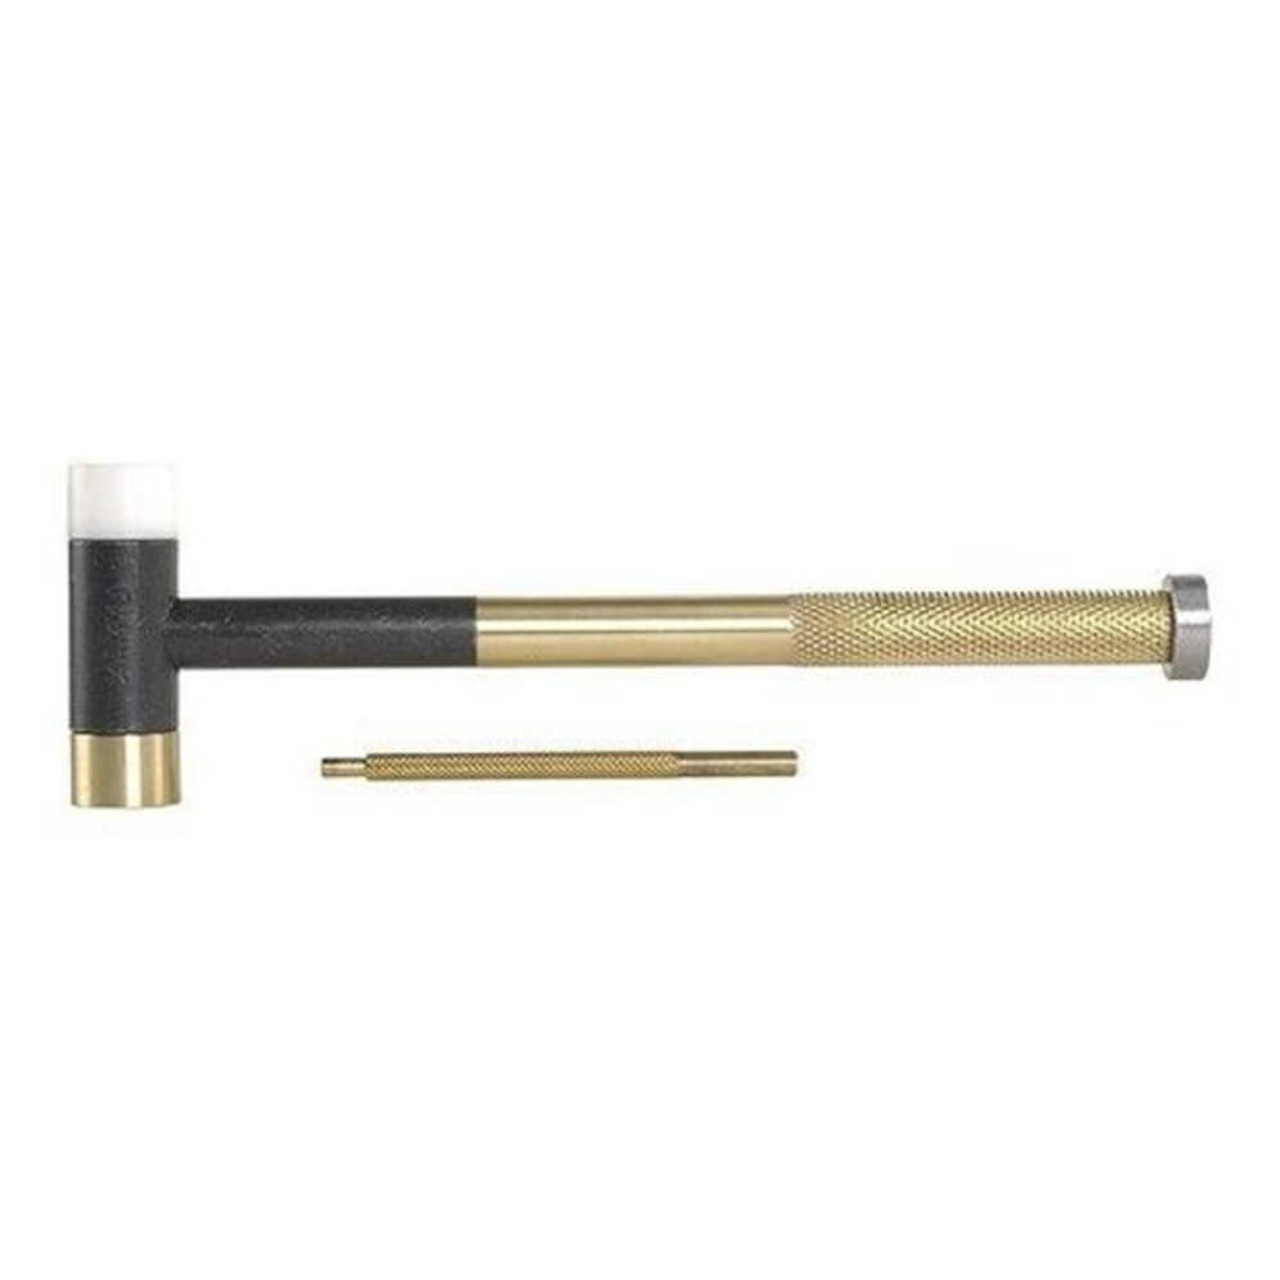 Pachmayr Brass Tapper Hammer 7031290, UPC : 011516812902